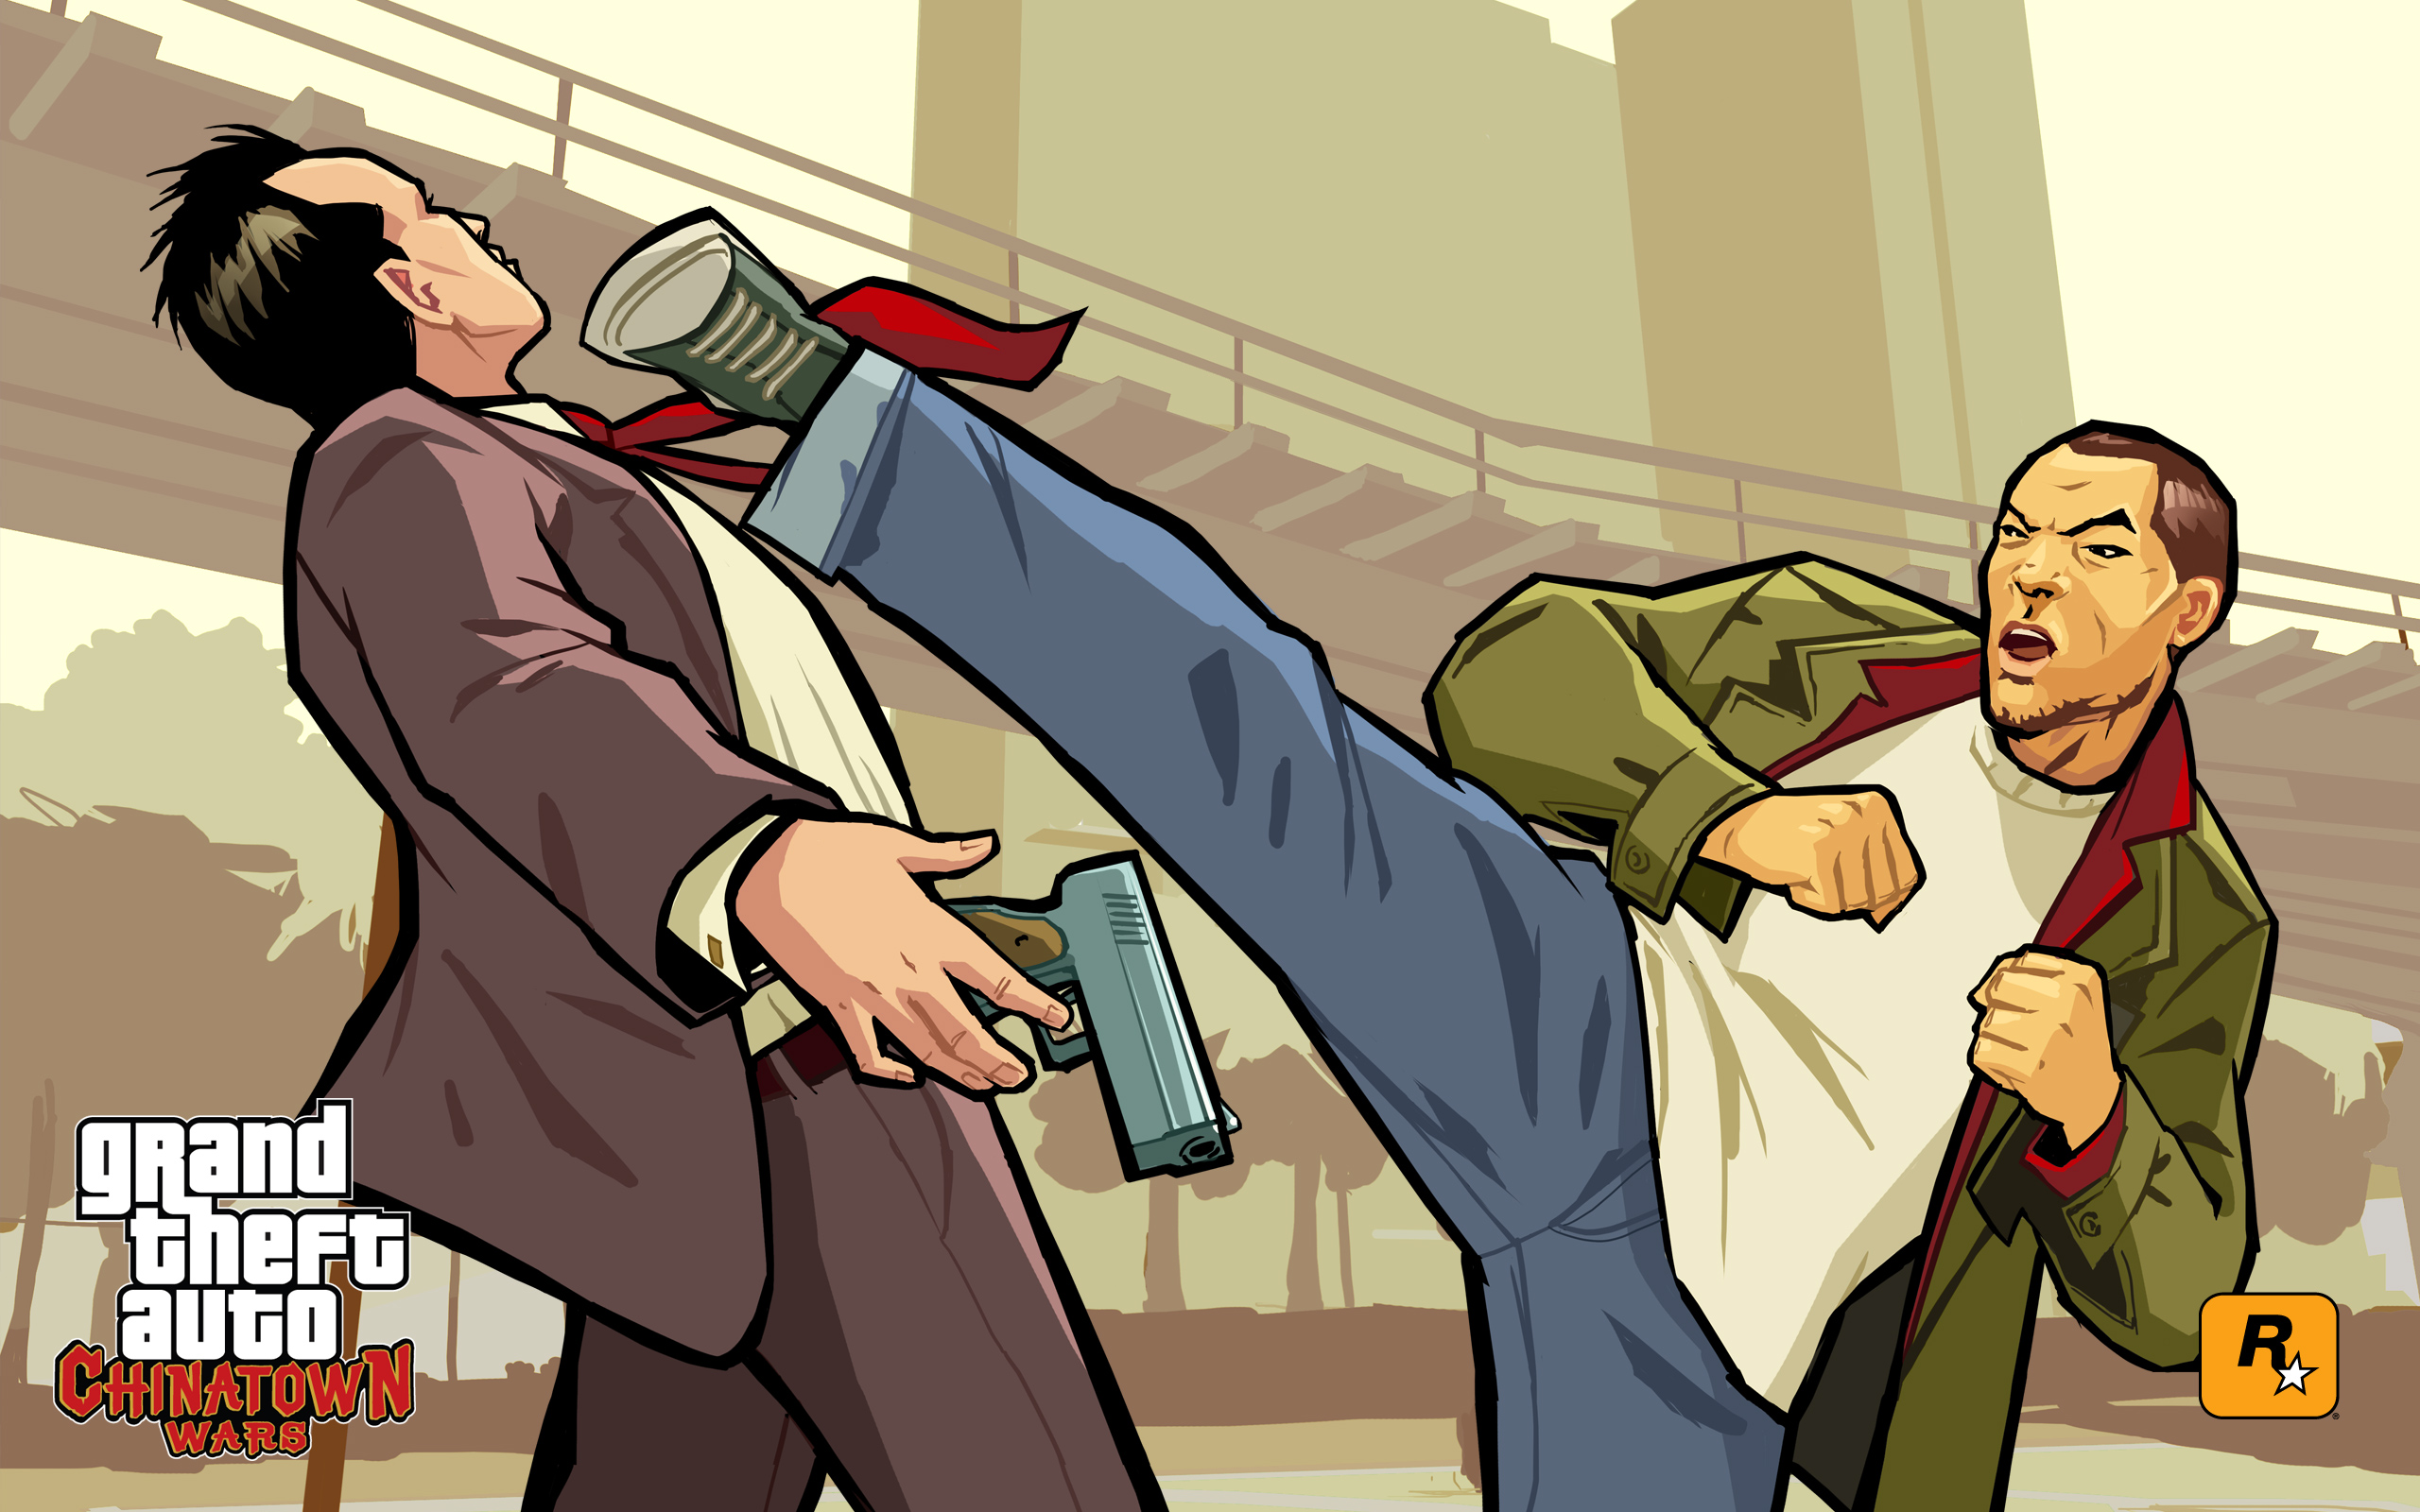 Meilleurs fonds d'écran Grand Theft Auto: Chinatown Wars pour l'écran du téléphone